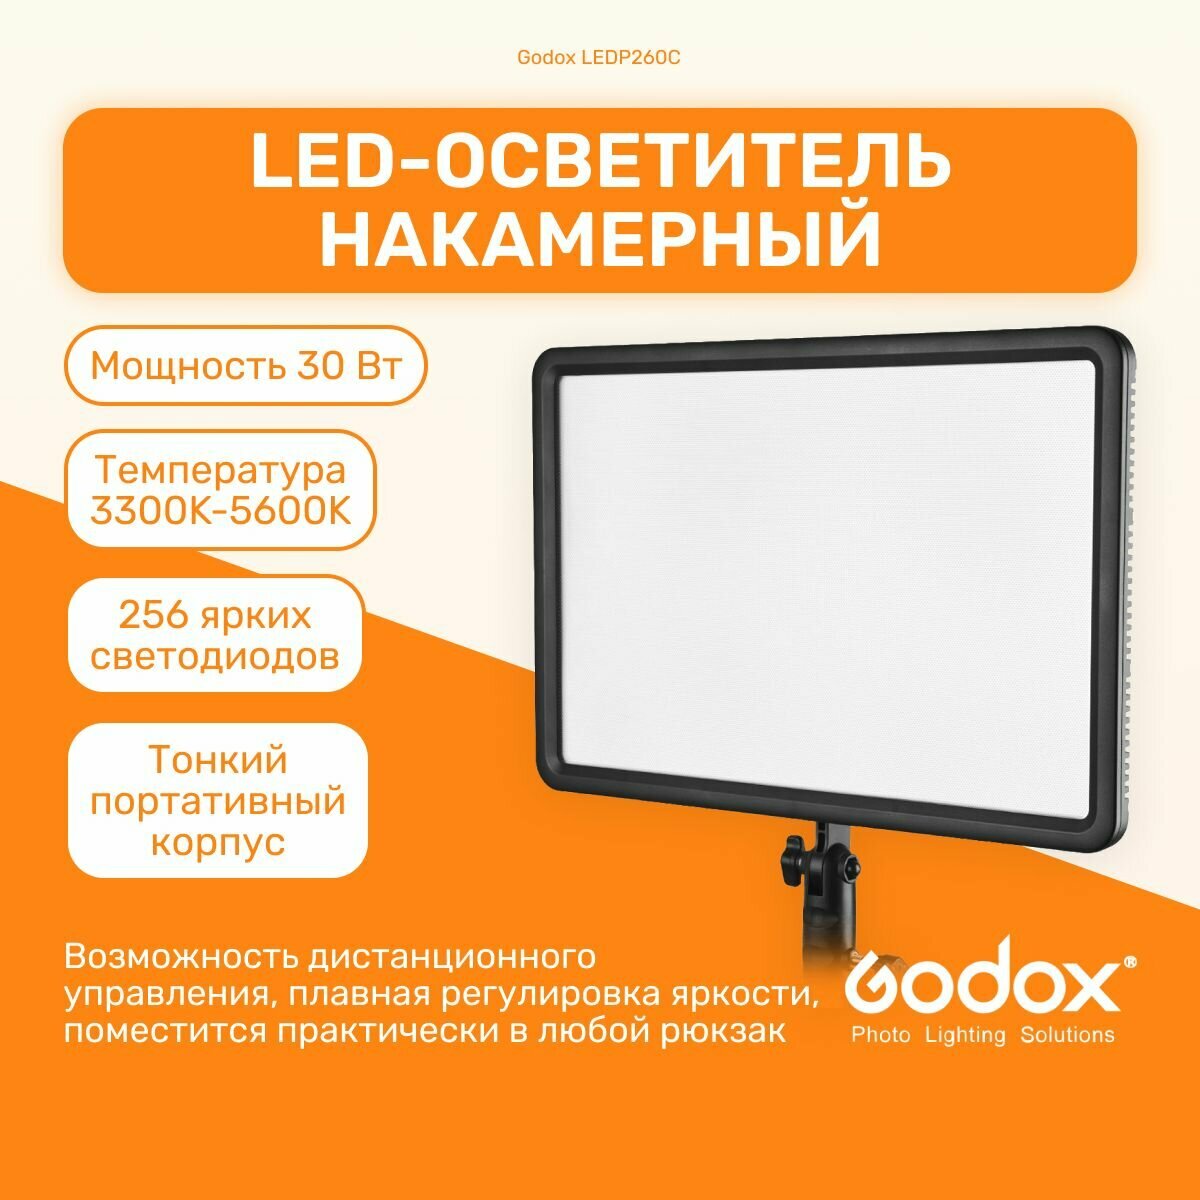 Осветитель светодиодный Godox LEDP260C накамерный (без пульта), свет для съемки фото, видеосвет, LED панель